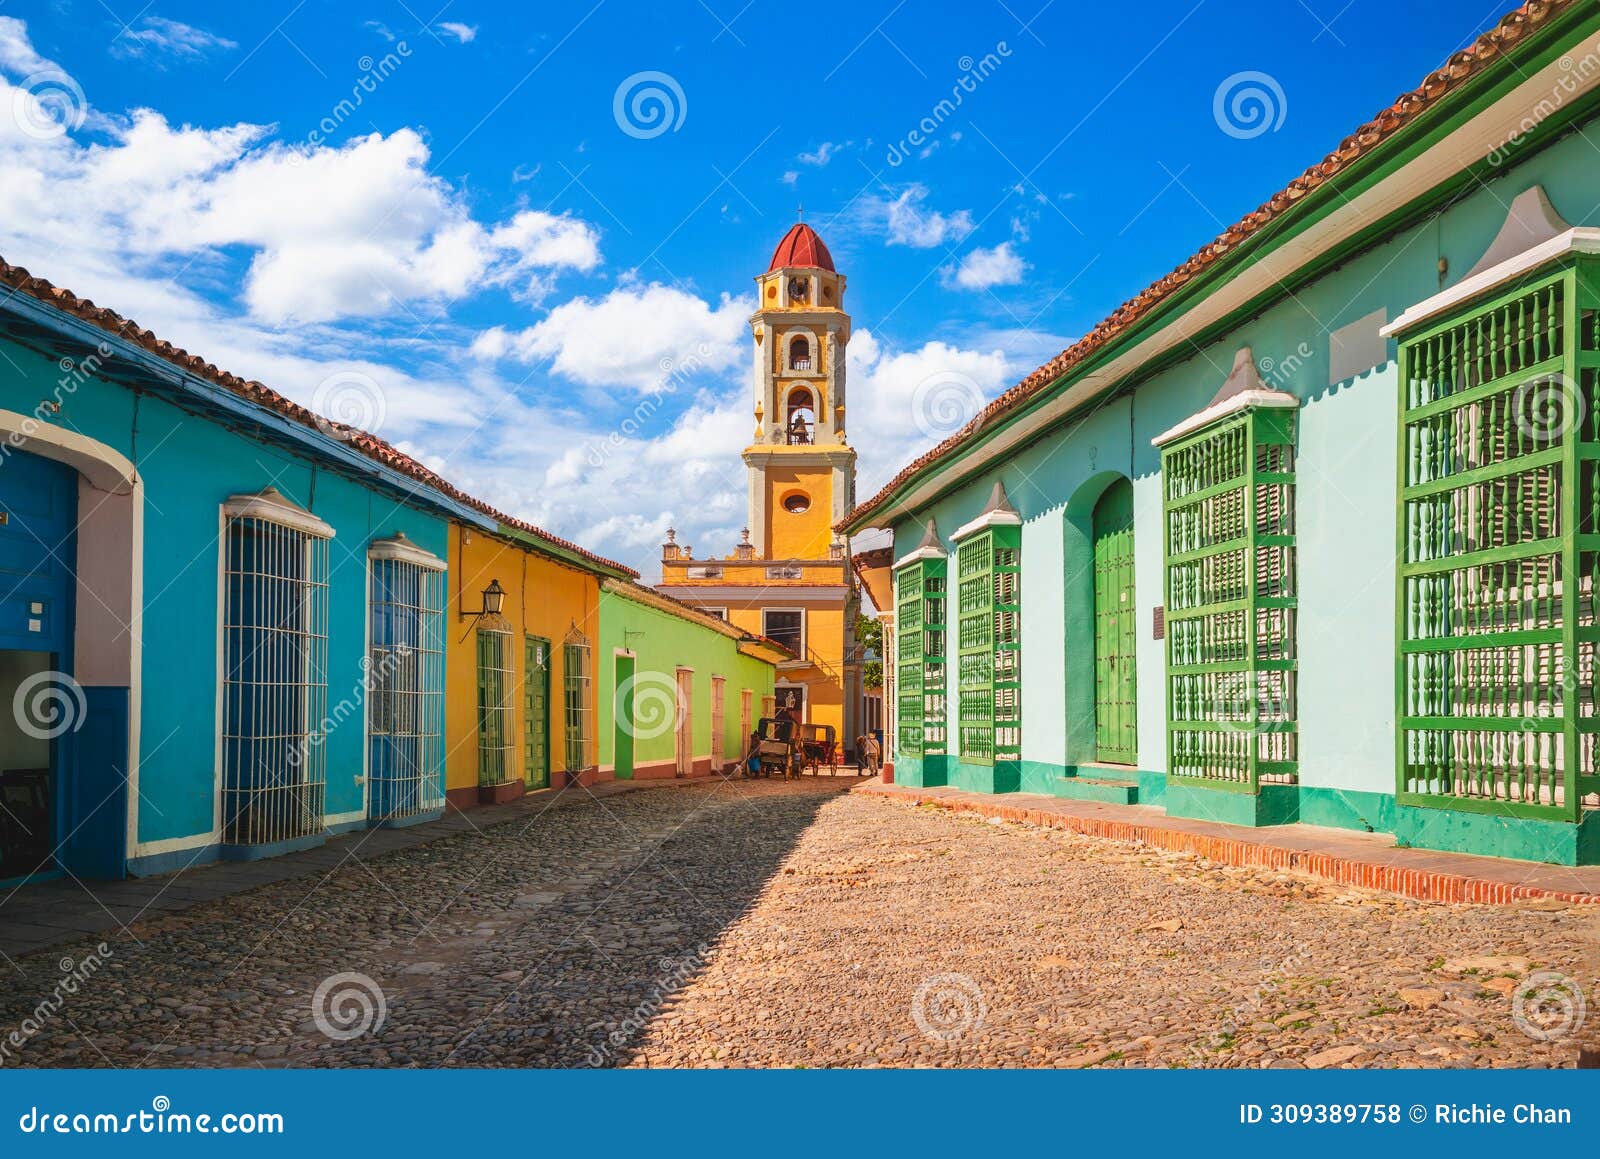 the iglesia y convento de san francisco in trinidad, cuba